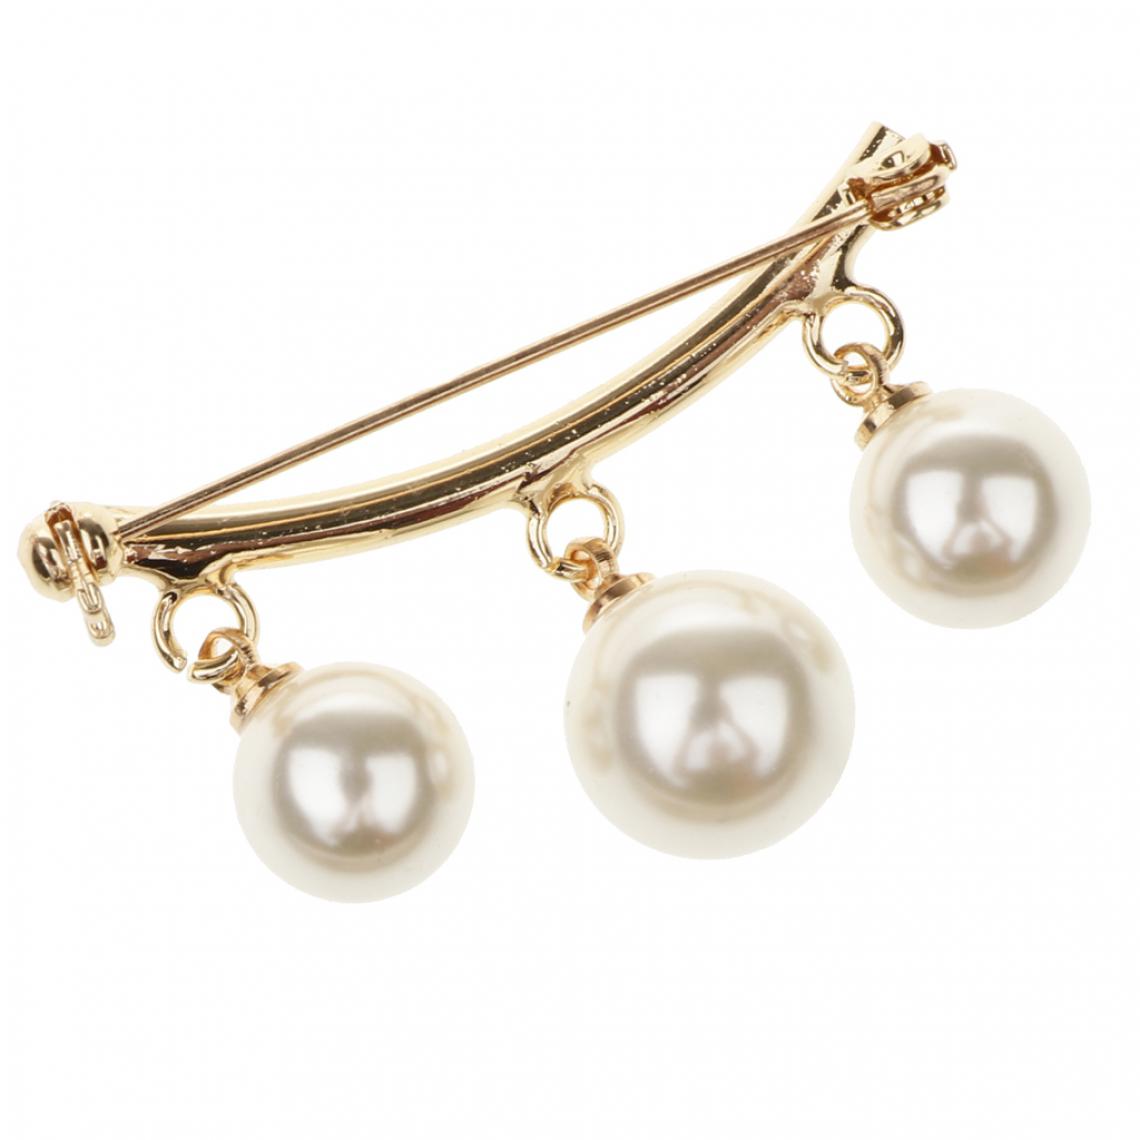 marque generique - Charms imitation perle Dangle Pull en forme de arc de sécurité Collor Pull Golden - Broches de maçon